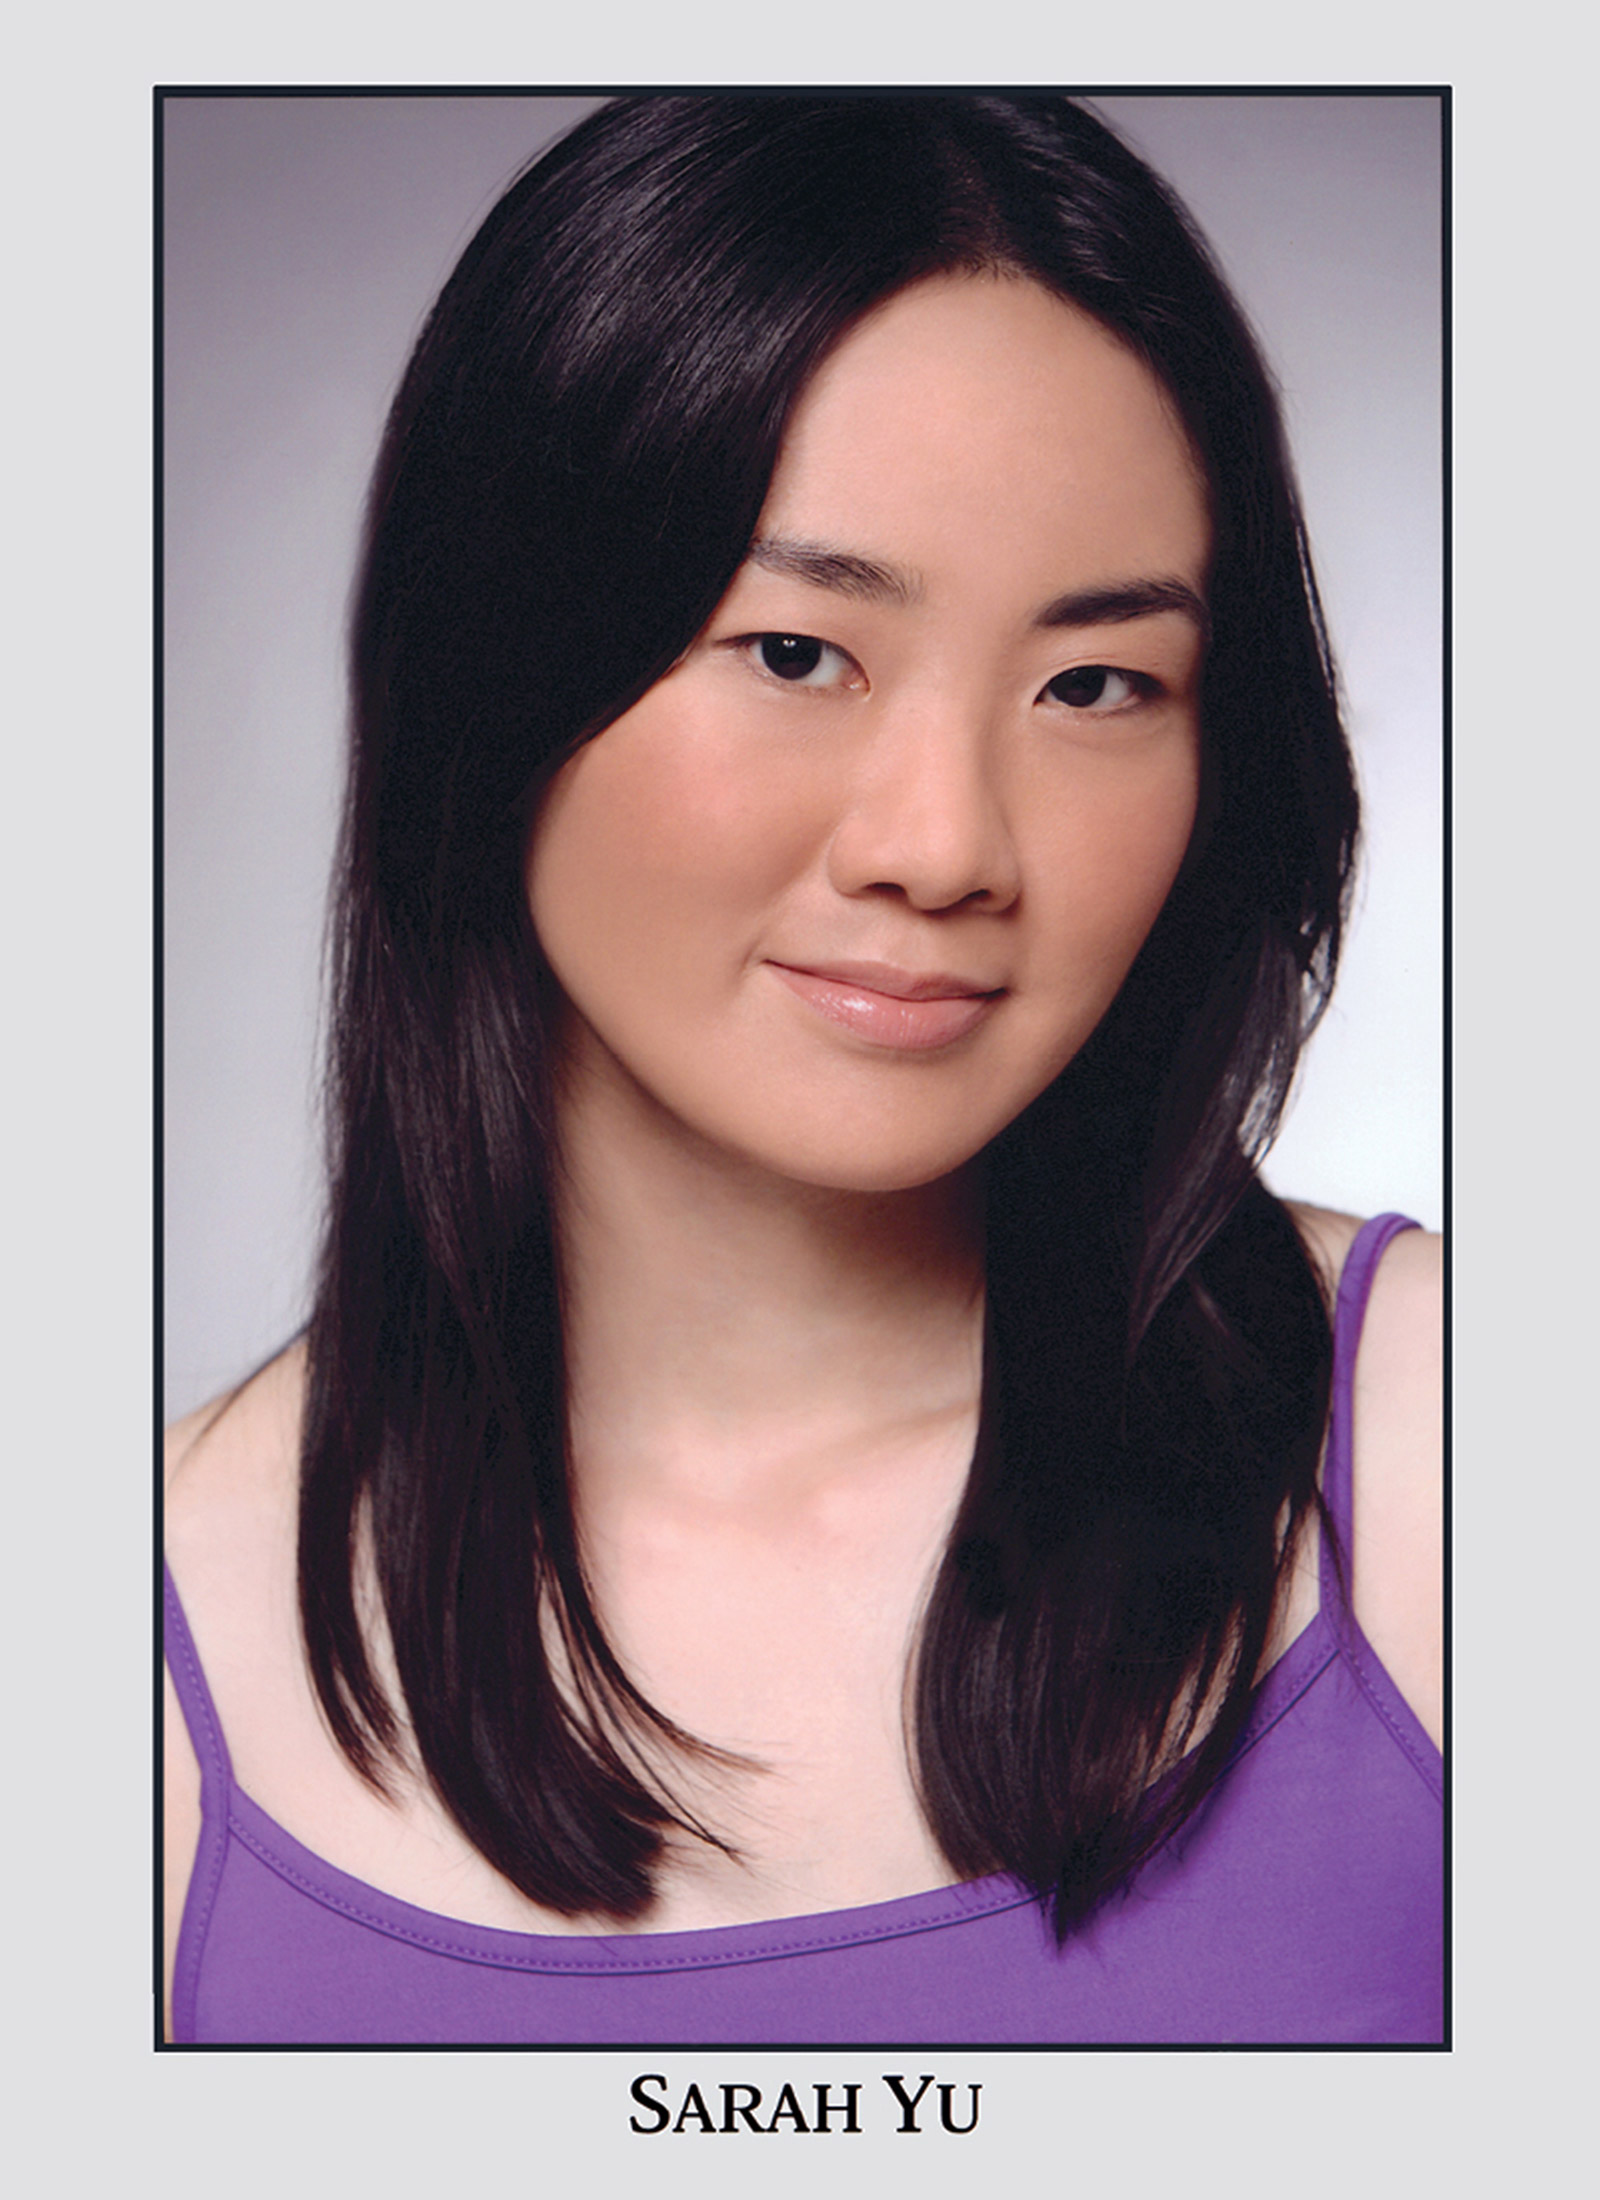 A headshot of Sarah Yu.